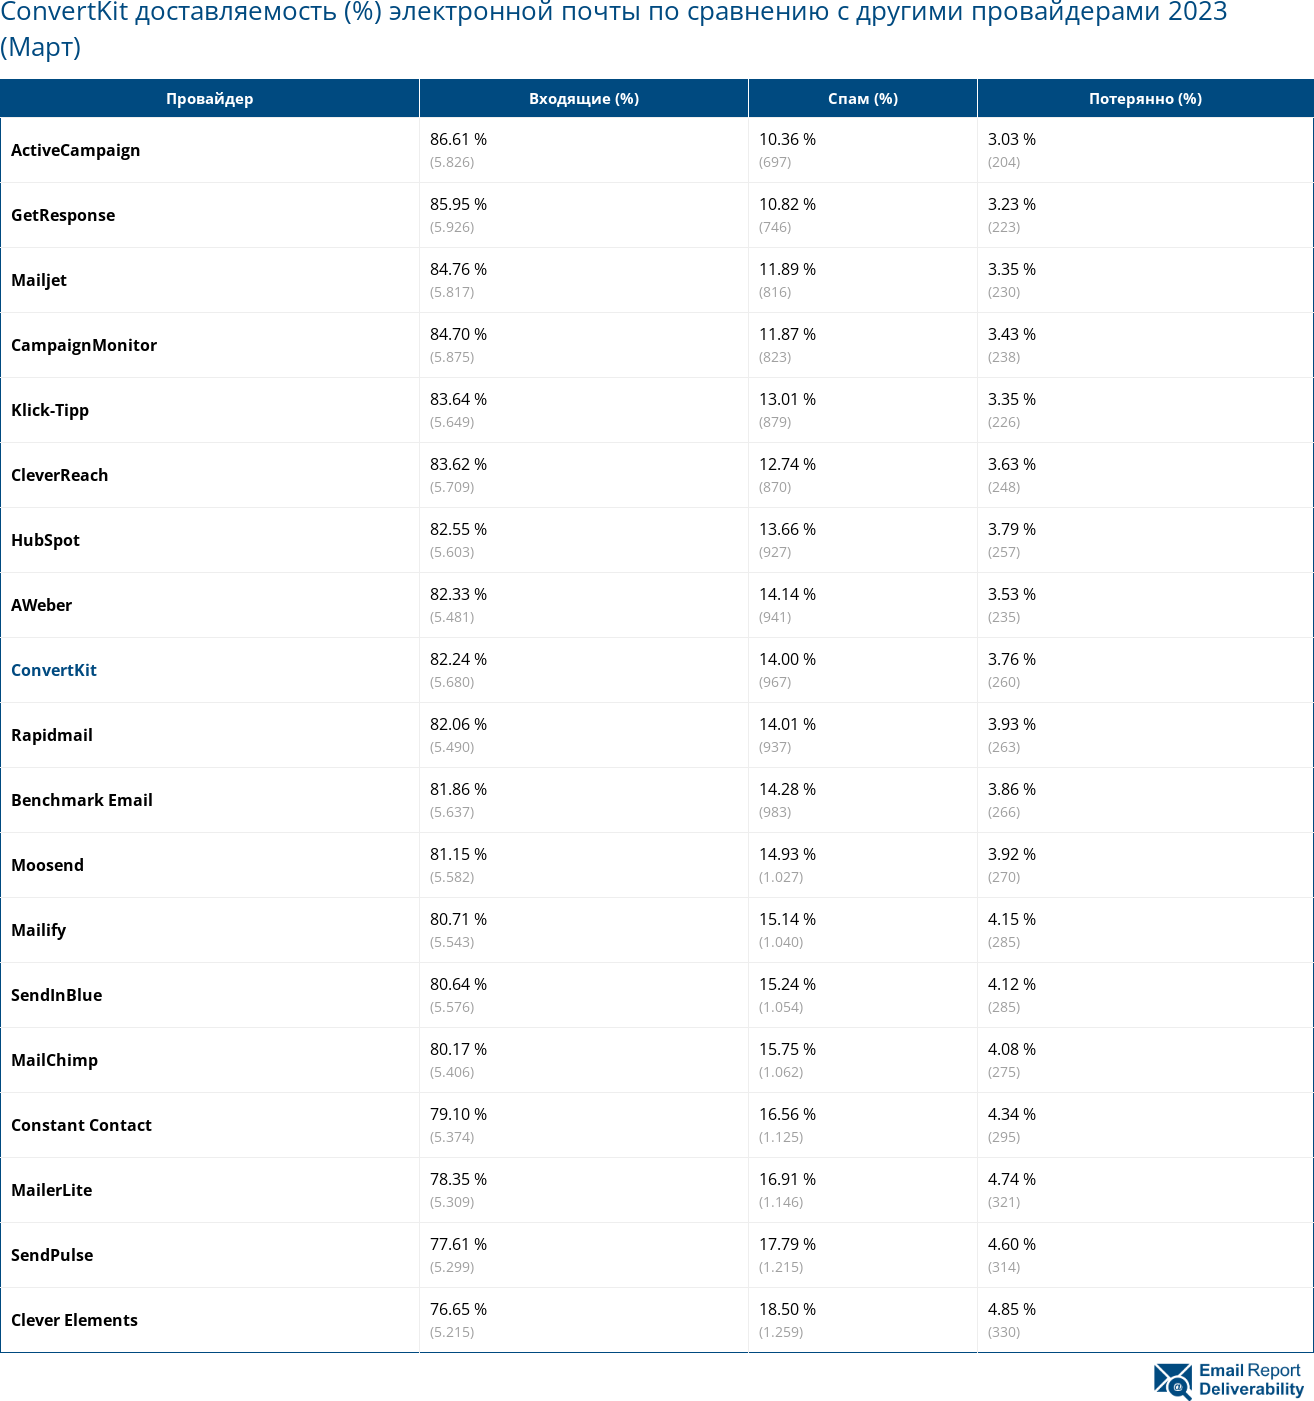 ConvertKit доставляемость (%) электронной почты по сравнению с другими провайдерами 2023 (Март)